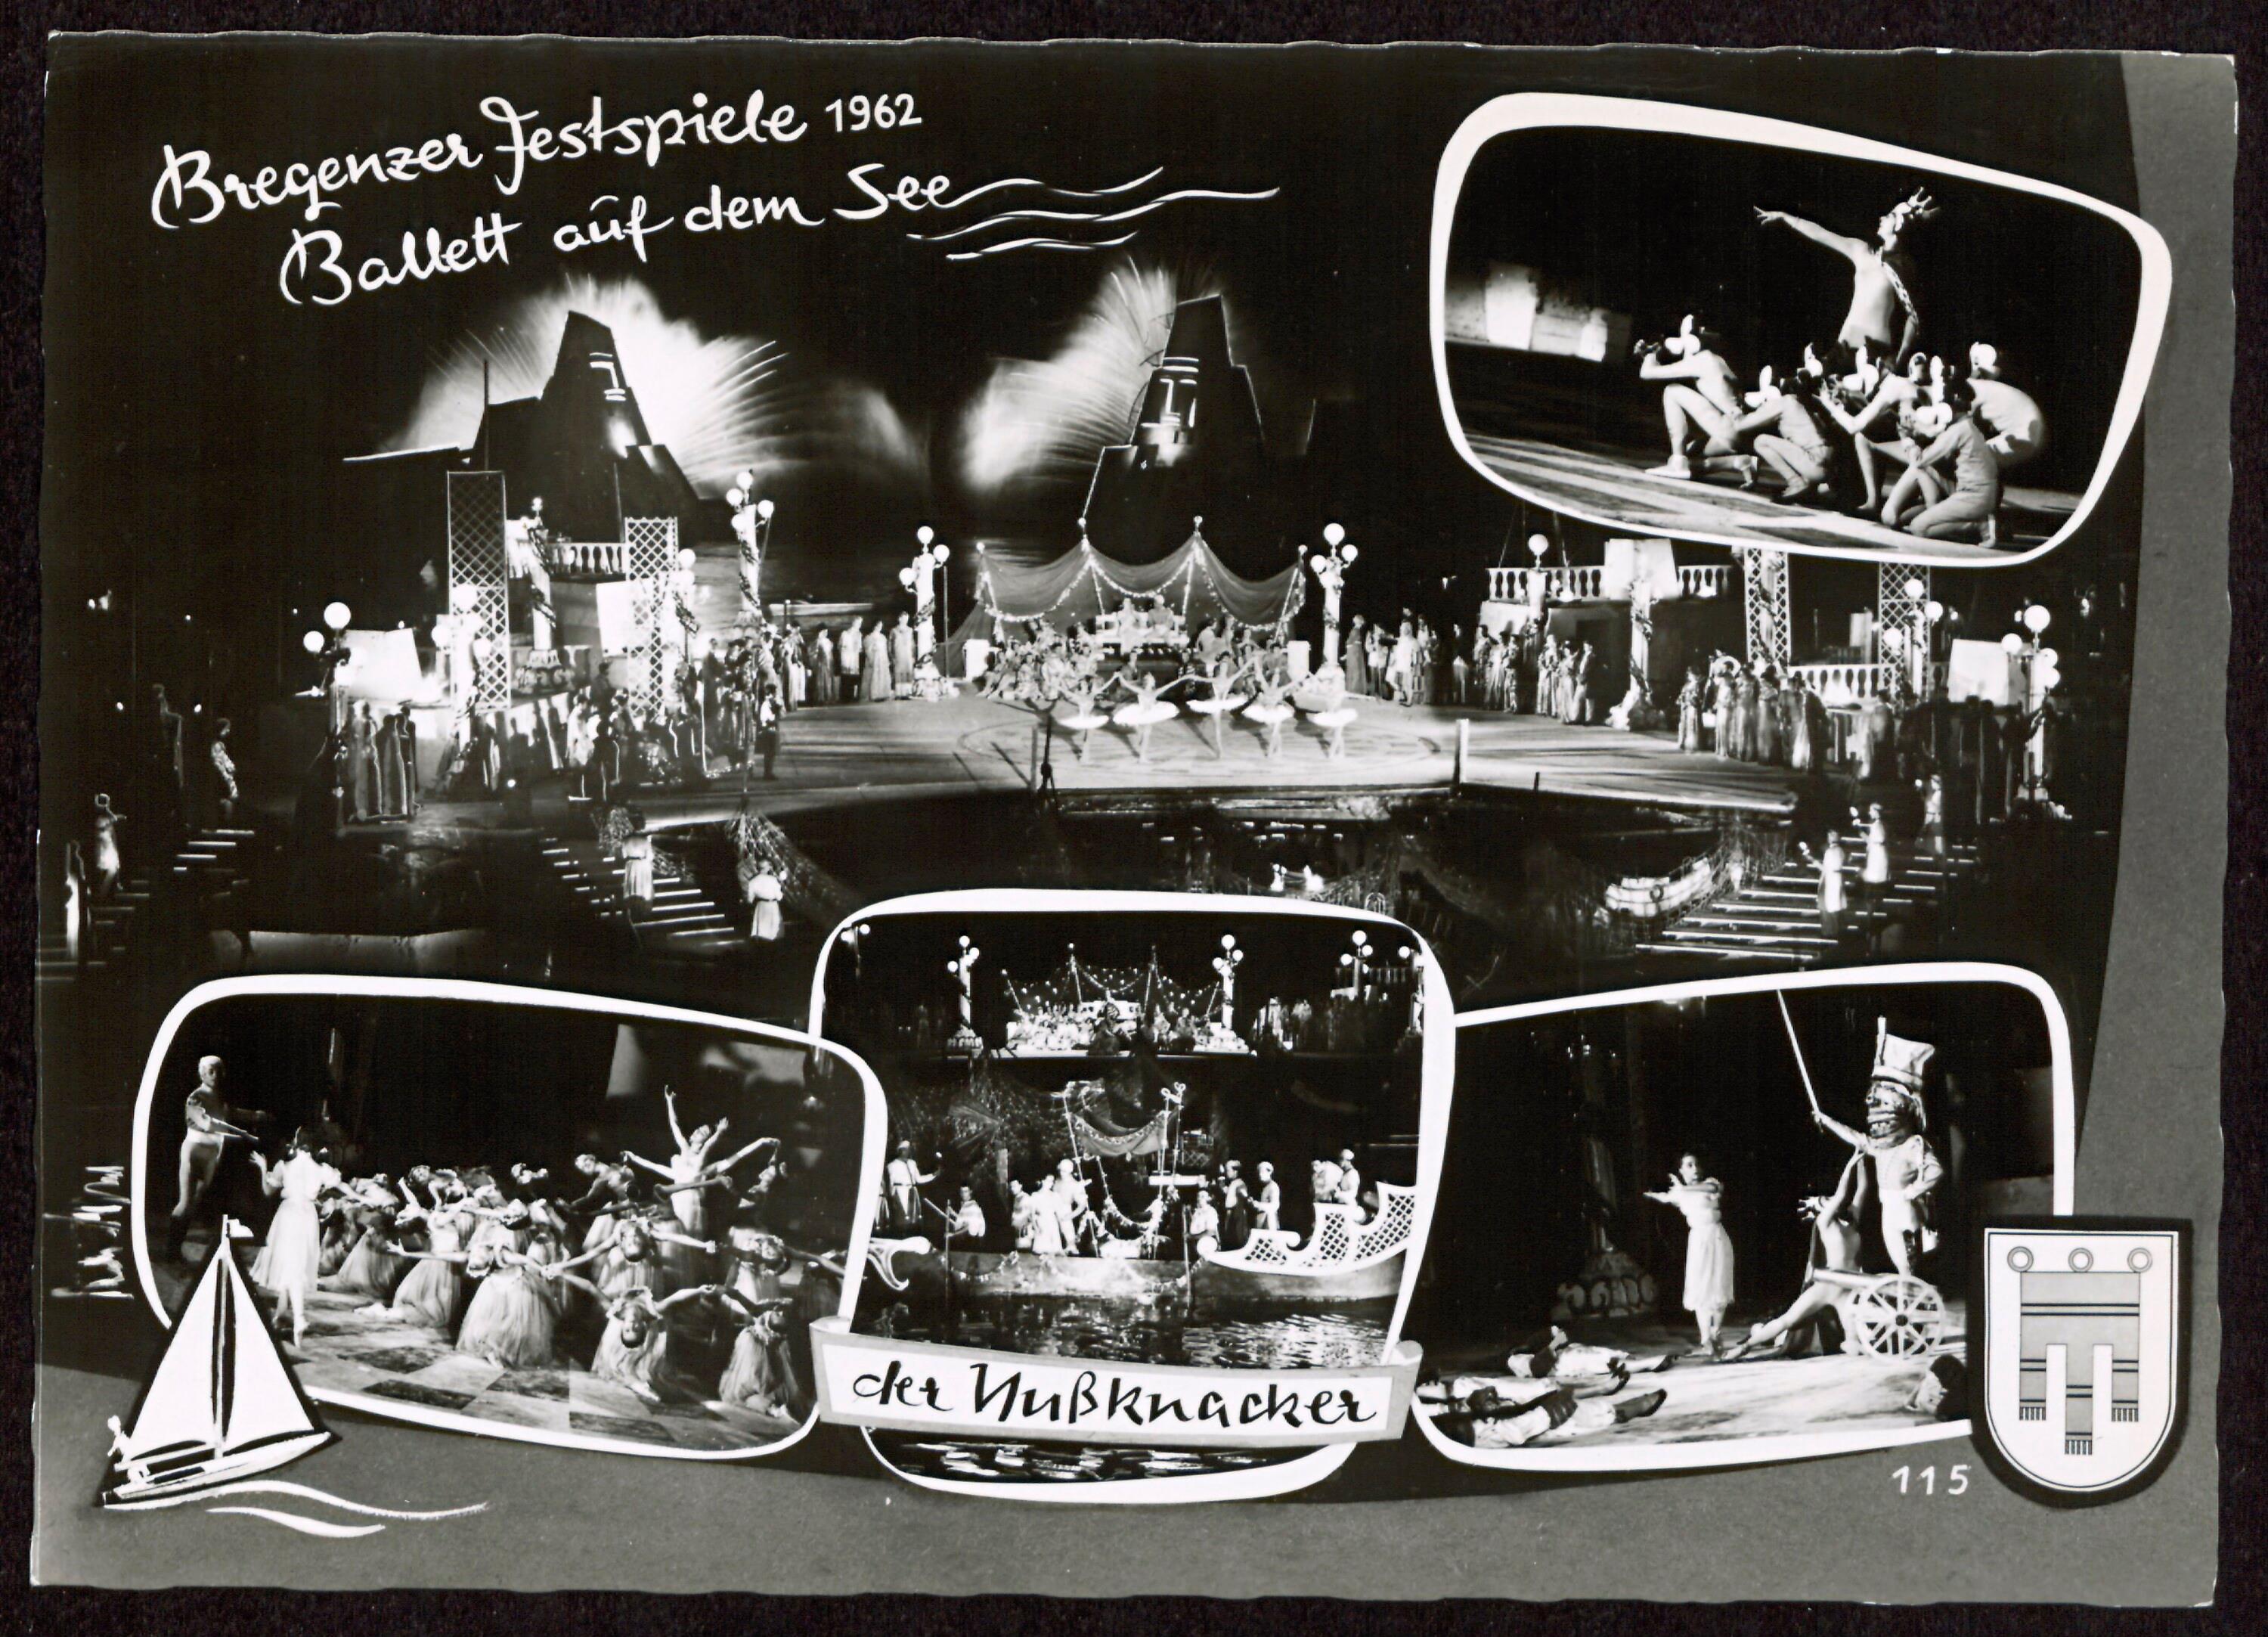 Bregenzer Festspiele 1962></div>


    <hr>
    <div class=